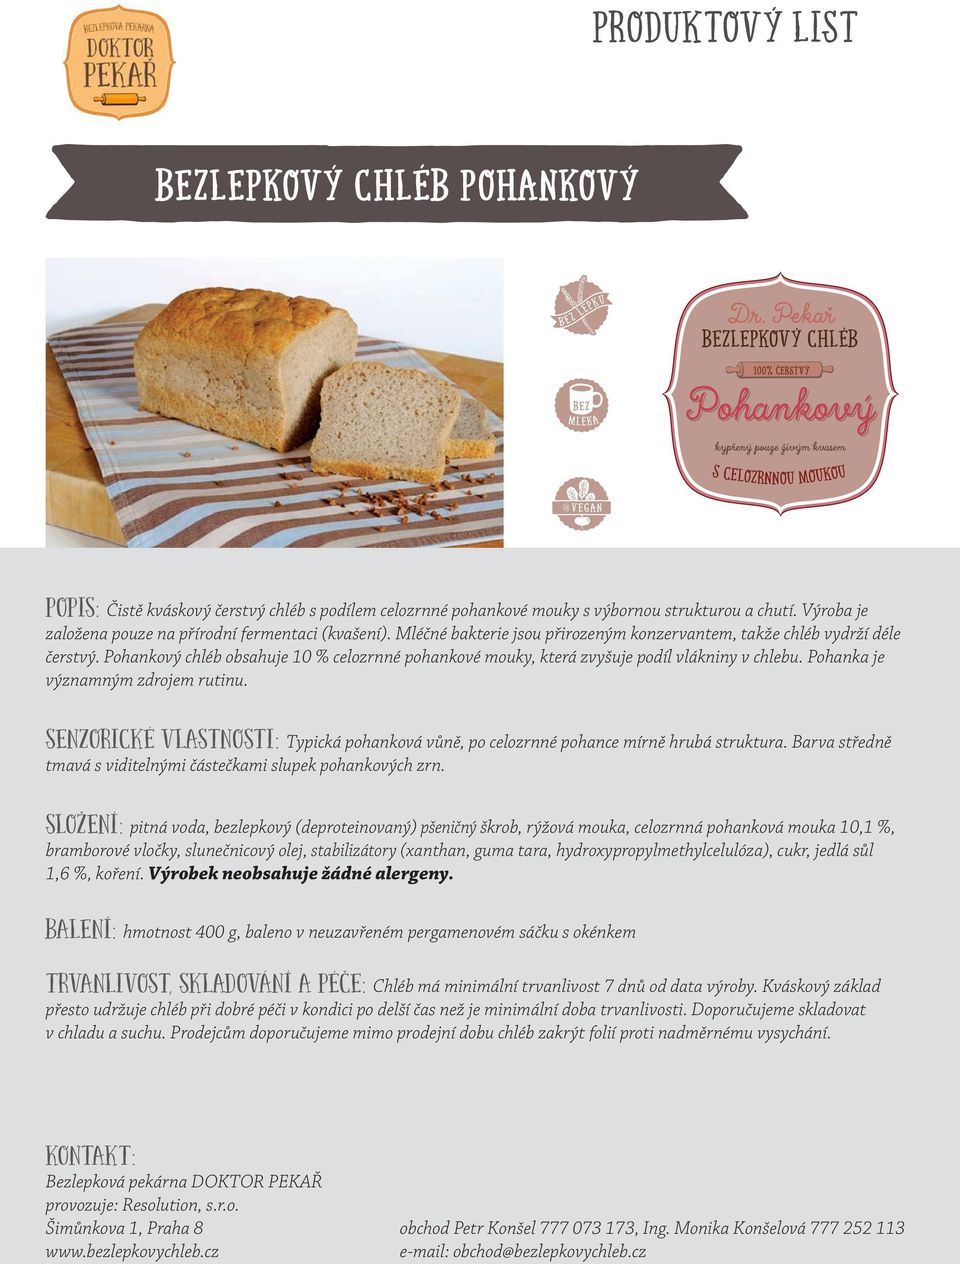 Pohankový chléb obsahuje 10 % celozrnné pohankové mouky, která zvyšuje podíl vlákniny v chlebu. Pohanka je významným zdrojem rutinu.